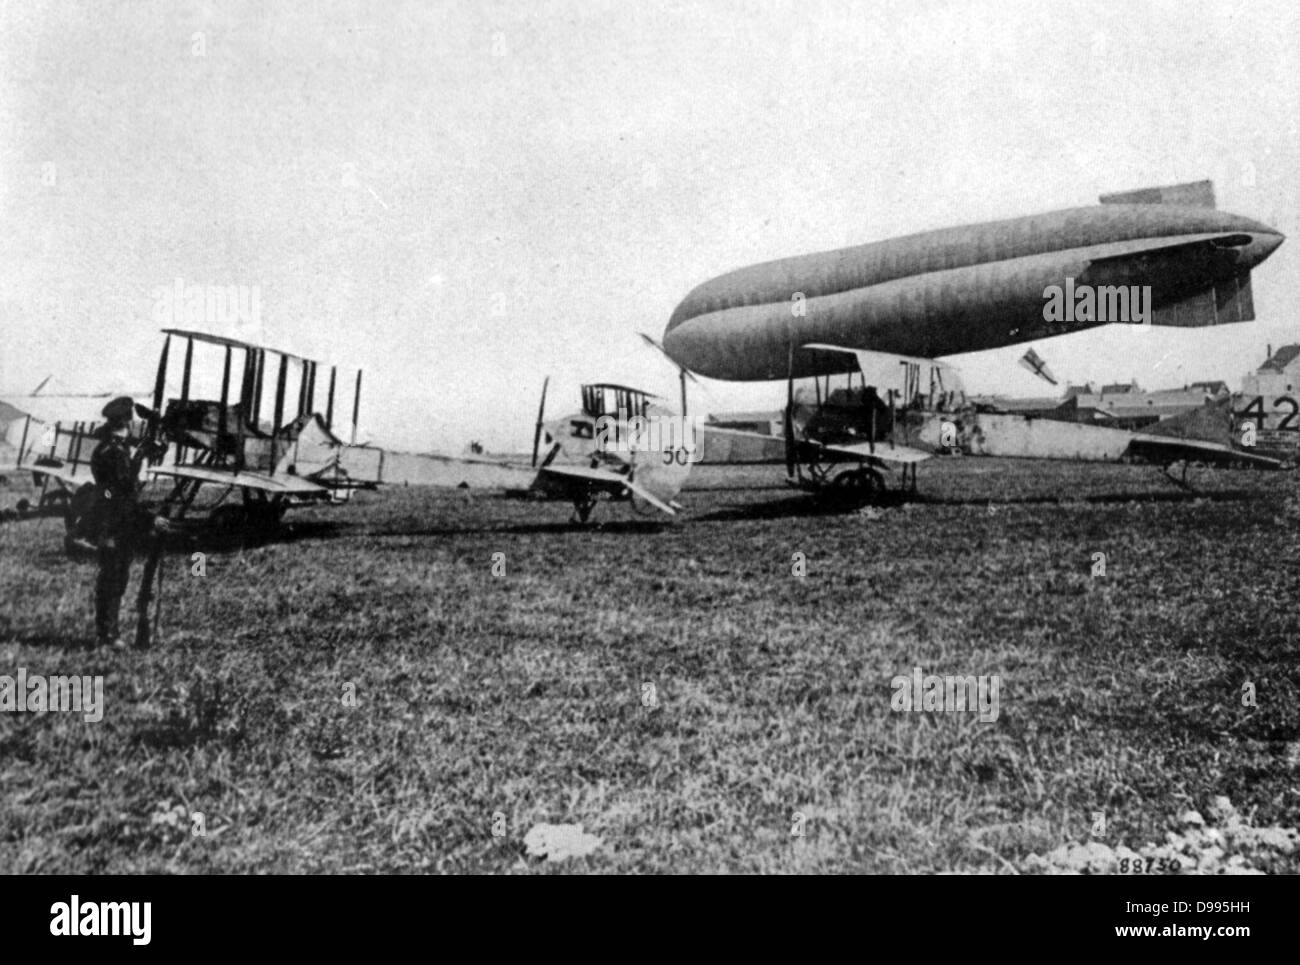 Doppeldecker des Royal Flying Corps, die Britische Militär air Arm, auf dem Boden stehen, zusammen mit einer Beobachtung Ballon. Erste für Antenne aufklärer am 13. Septemebr 1914 verwendet. Stockfoto